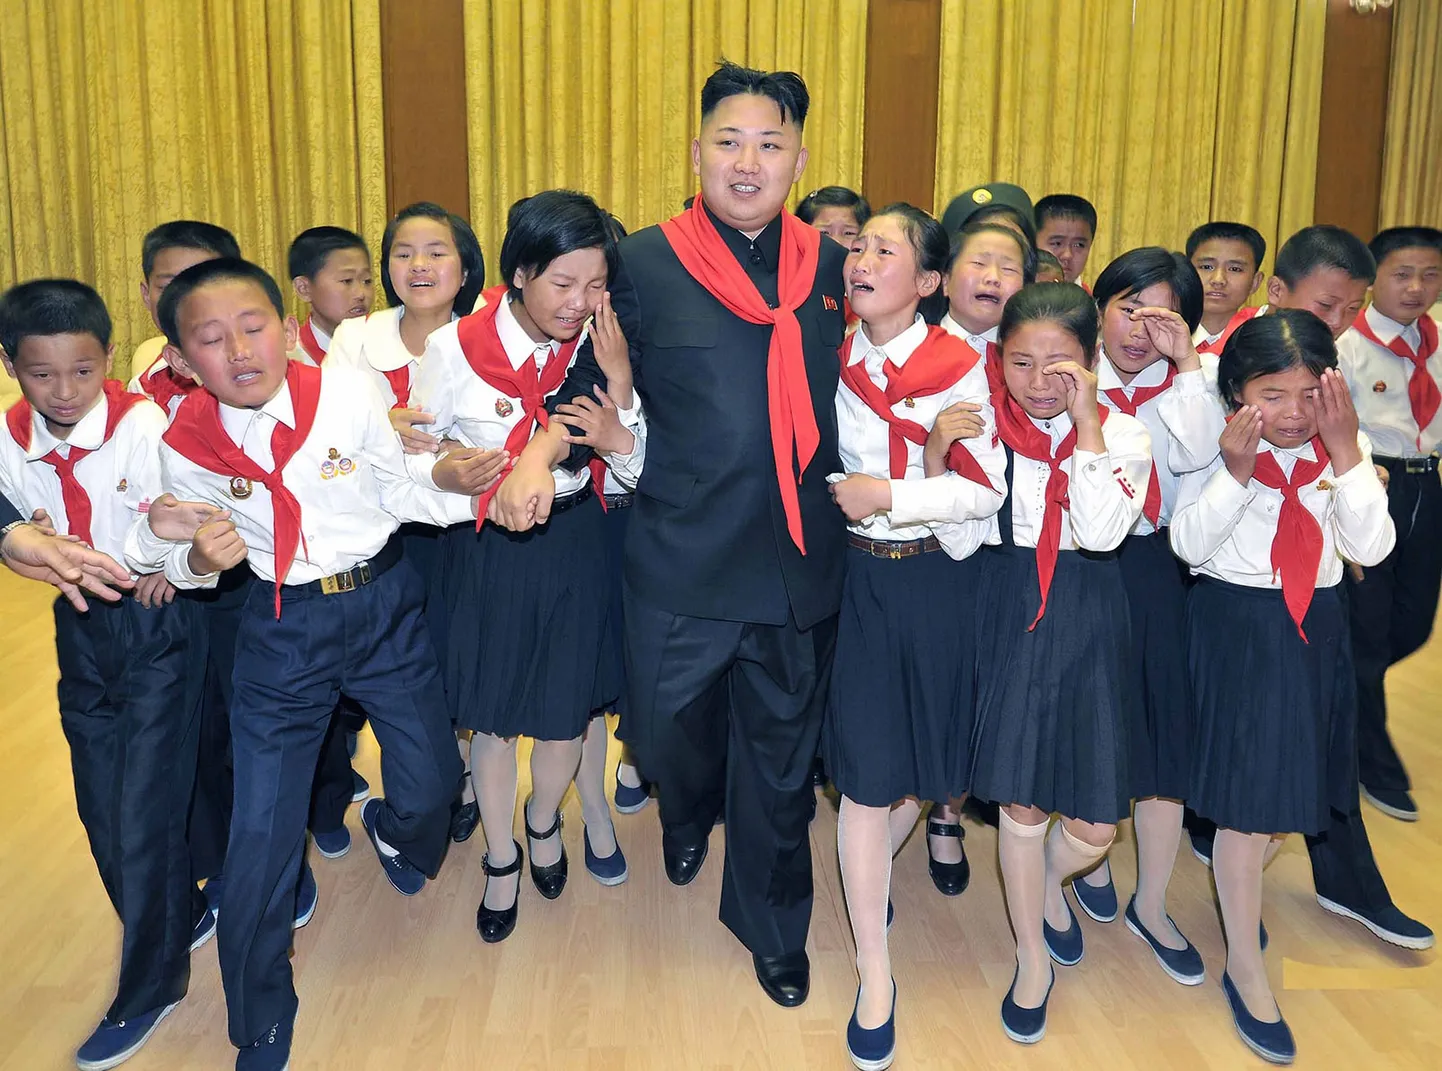 Põhja-Korea liider Kim Jong-Un eelmise aasta juunis kohtumas Korea lasteliidu liikmetega.